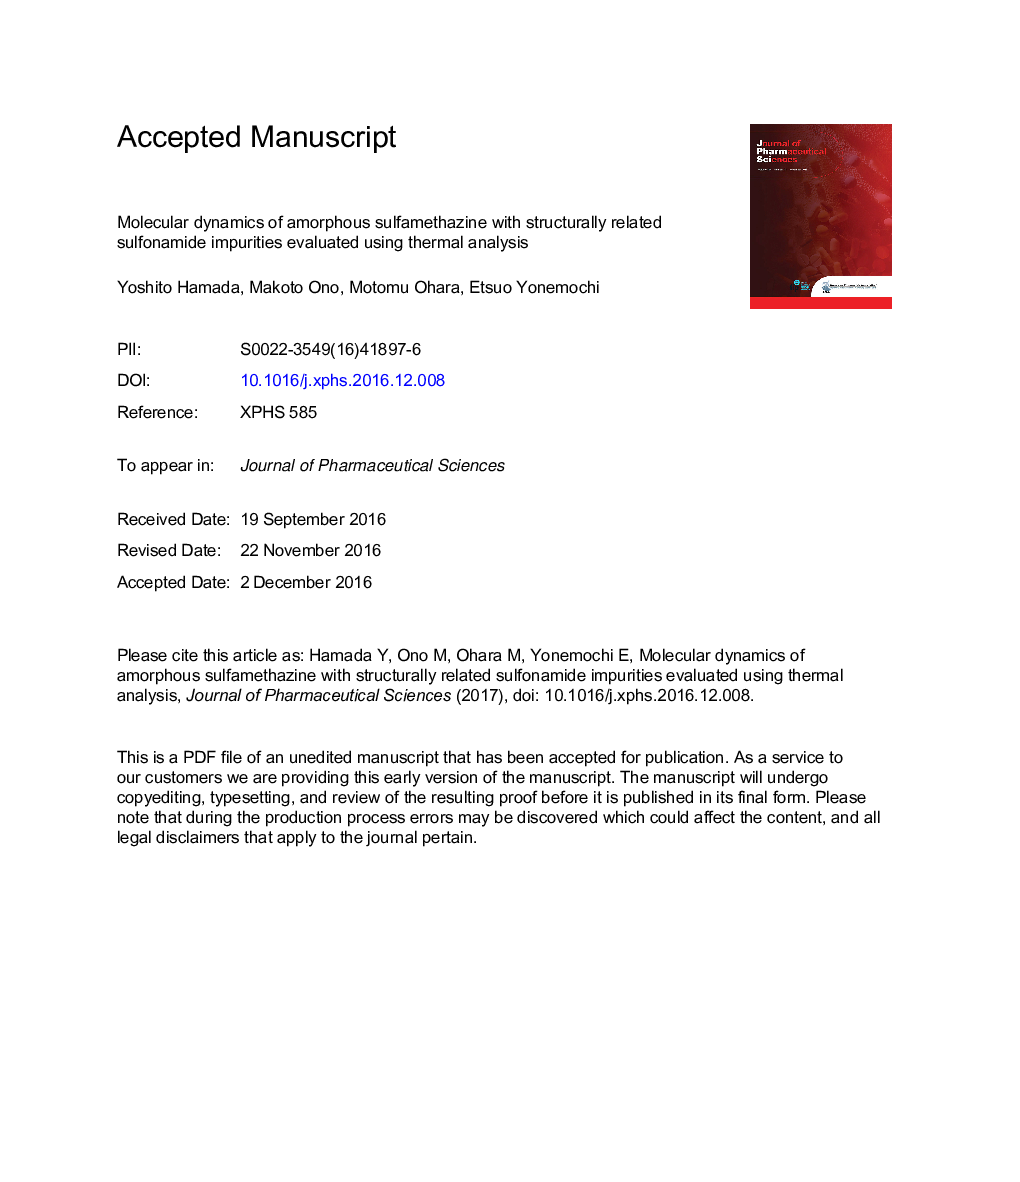 دینامیک مولکولی سولفاماتازین آمورف با آلودگی های سولفونامیدهای ساختاری مرتبط با استفاده از تحلیل حرارتی 